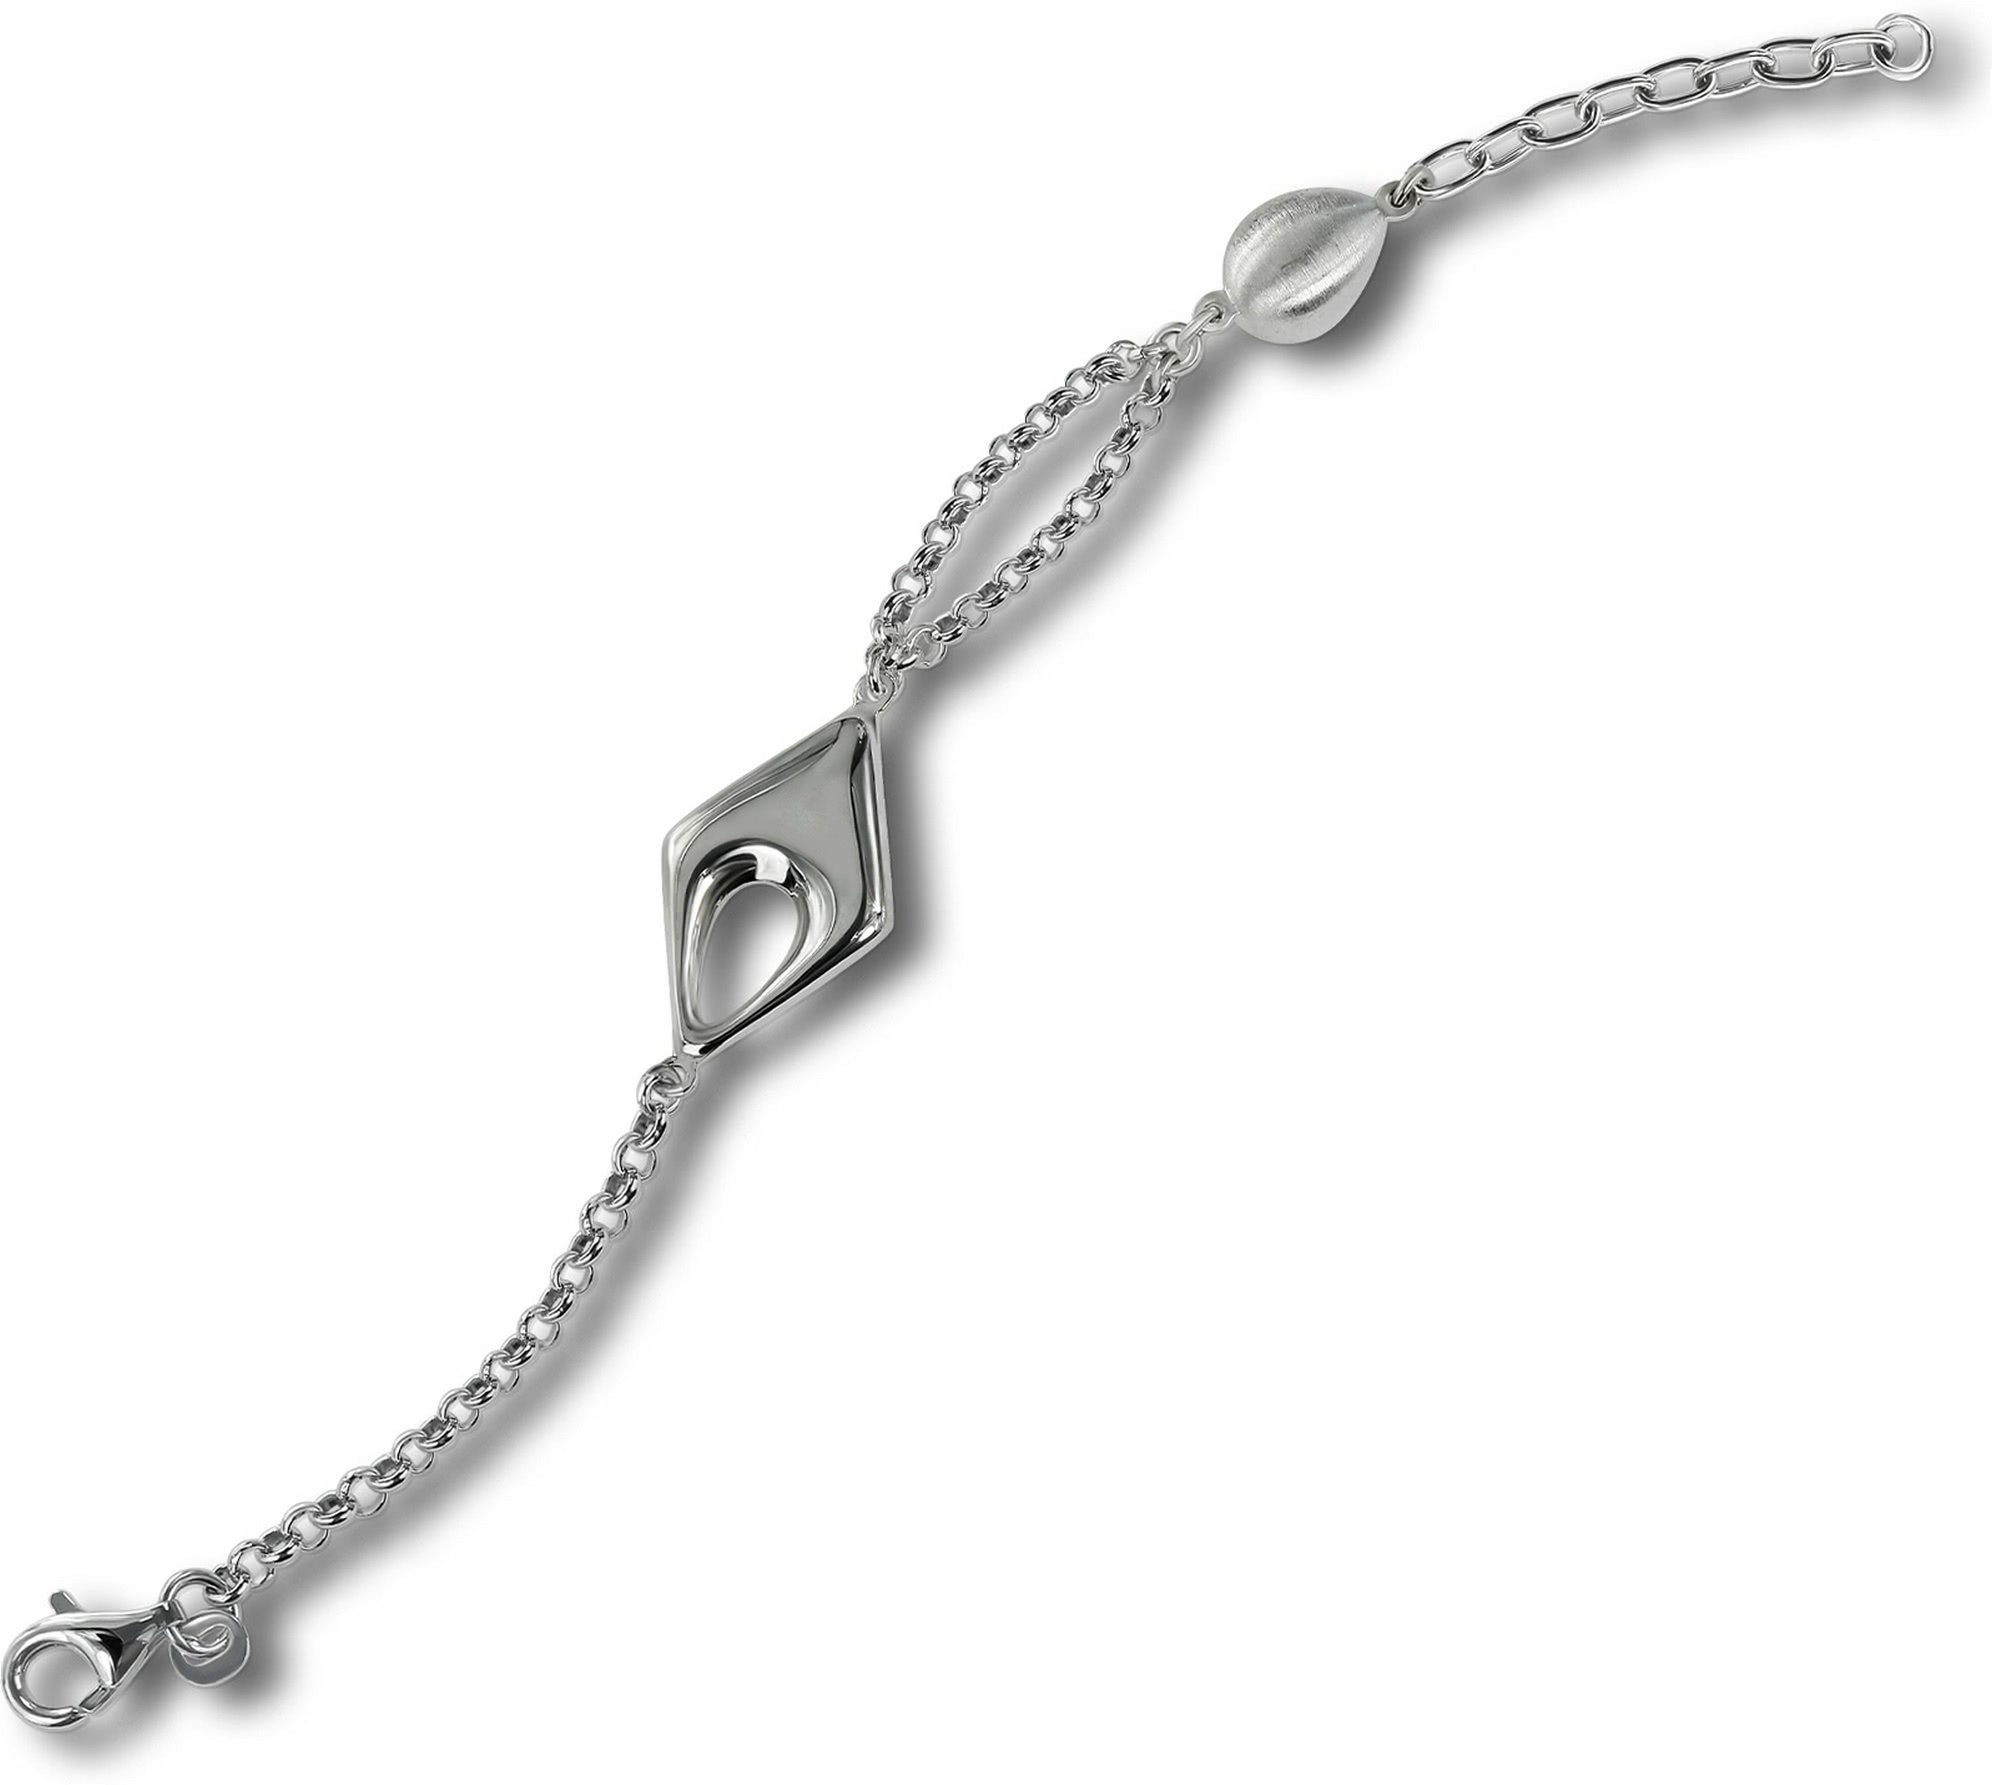 Silber ca. mattiert Damen Armband 925 Silberarmband Balia für (Armband), (Drop) Armband Silber 18,5cm, Balia